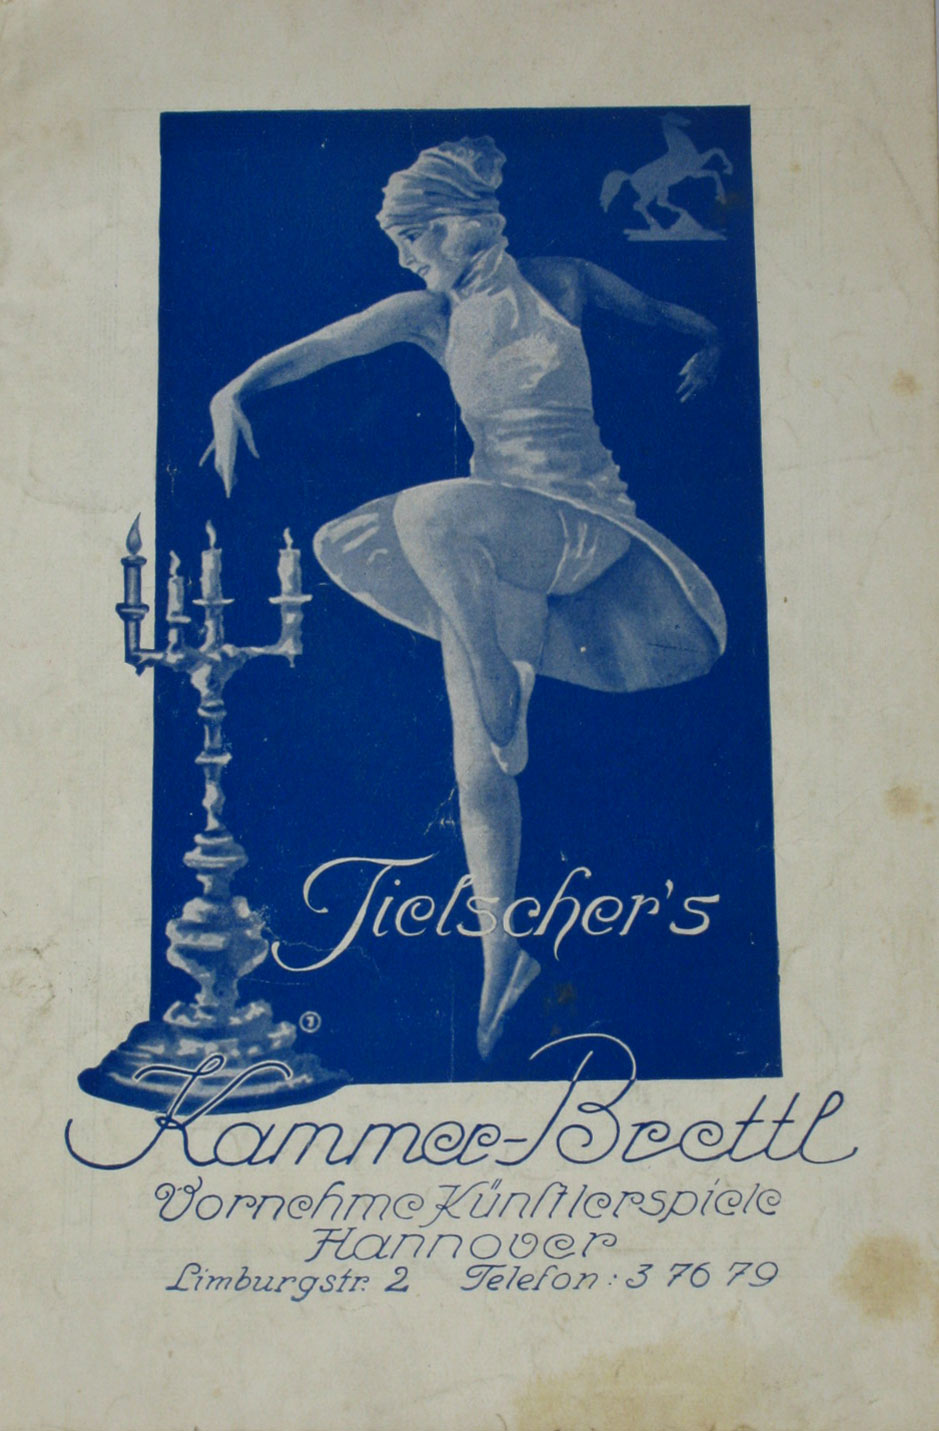   Programm des Kammer-Brettl`s (Heft 4/November 1929) 